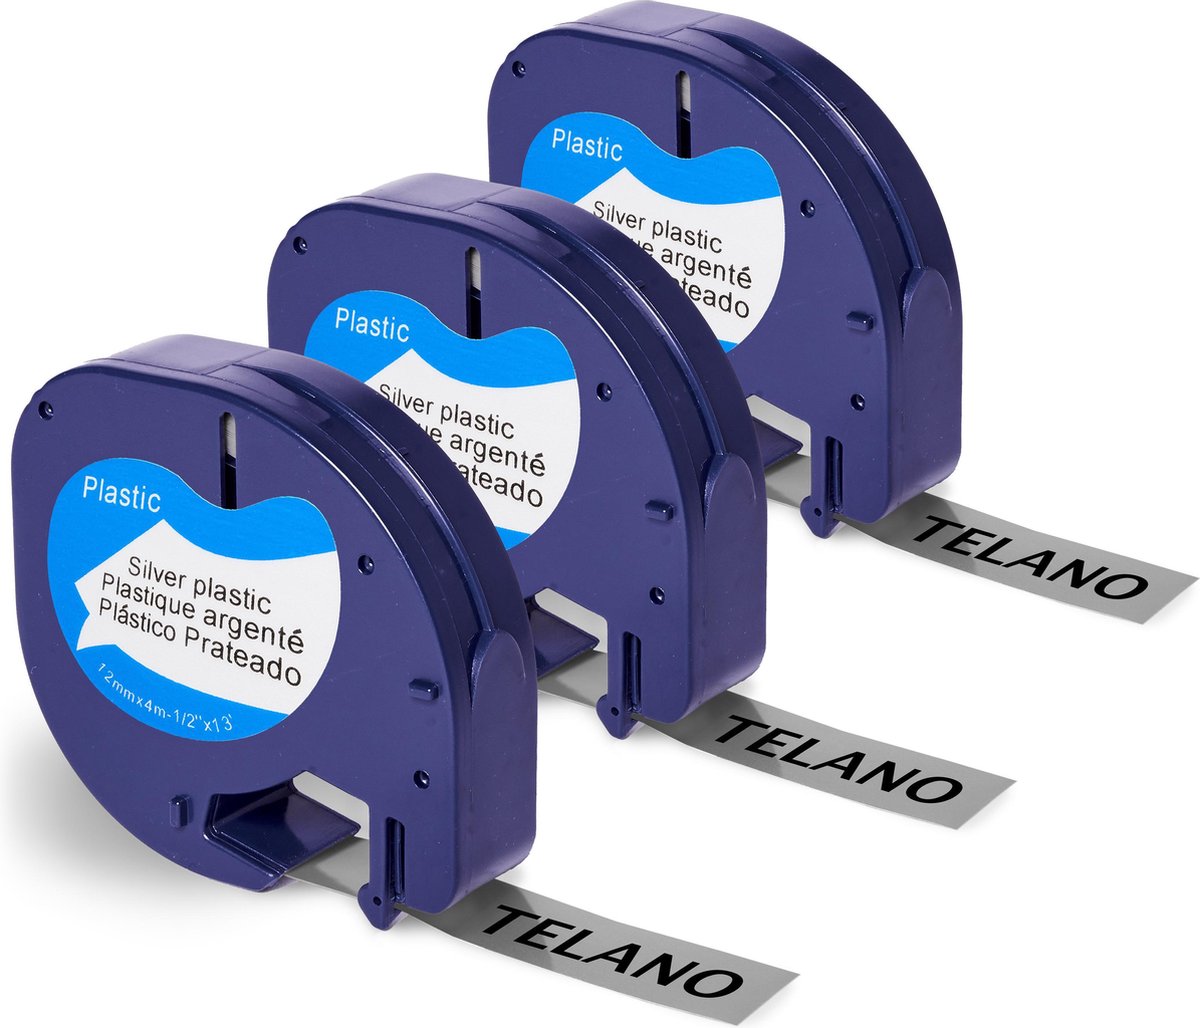 Telano® 3 stuks Plastic Labels Zwart op Zilver voor Dymo LetraTag Labelprinter - Labeltape 91208 - 12 mm x 4 m